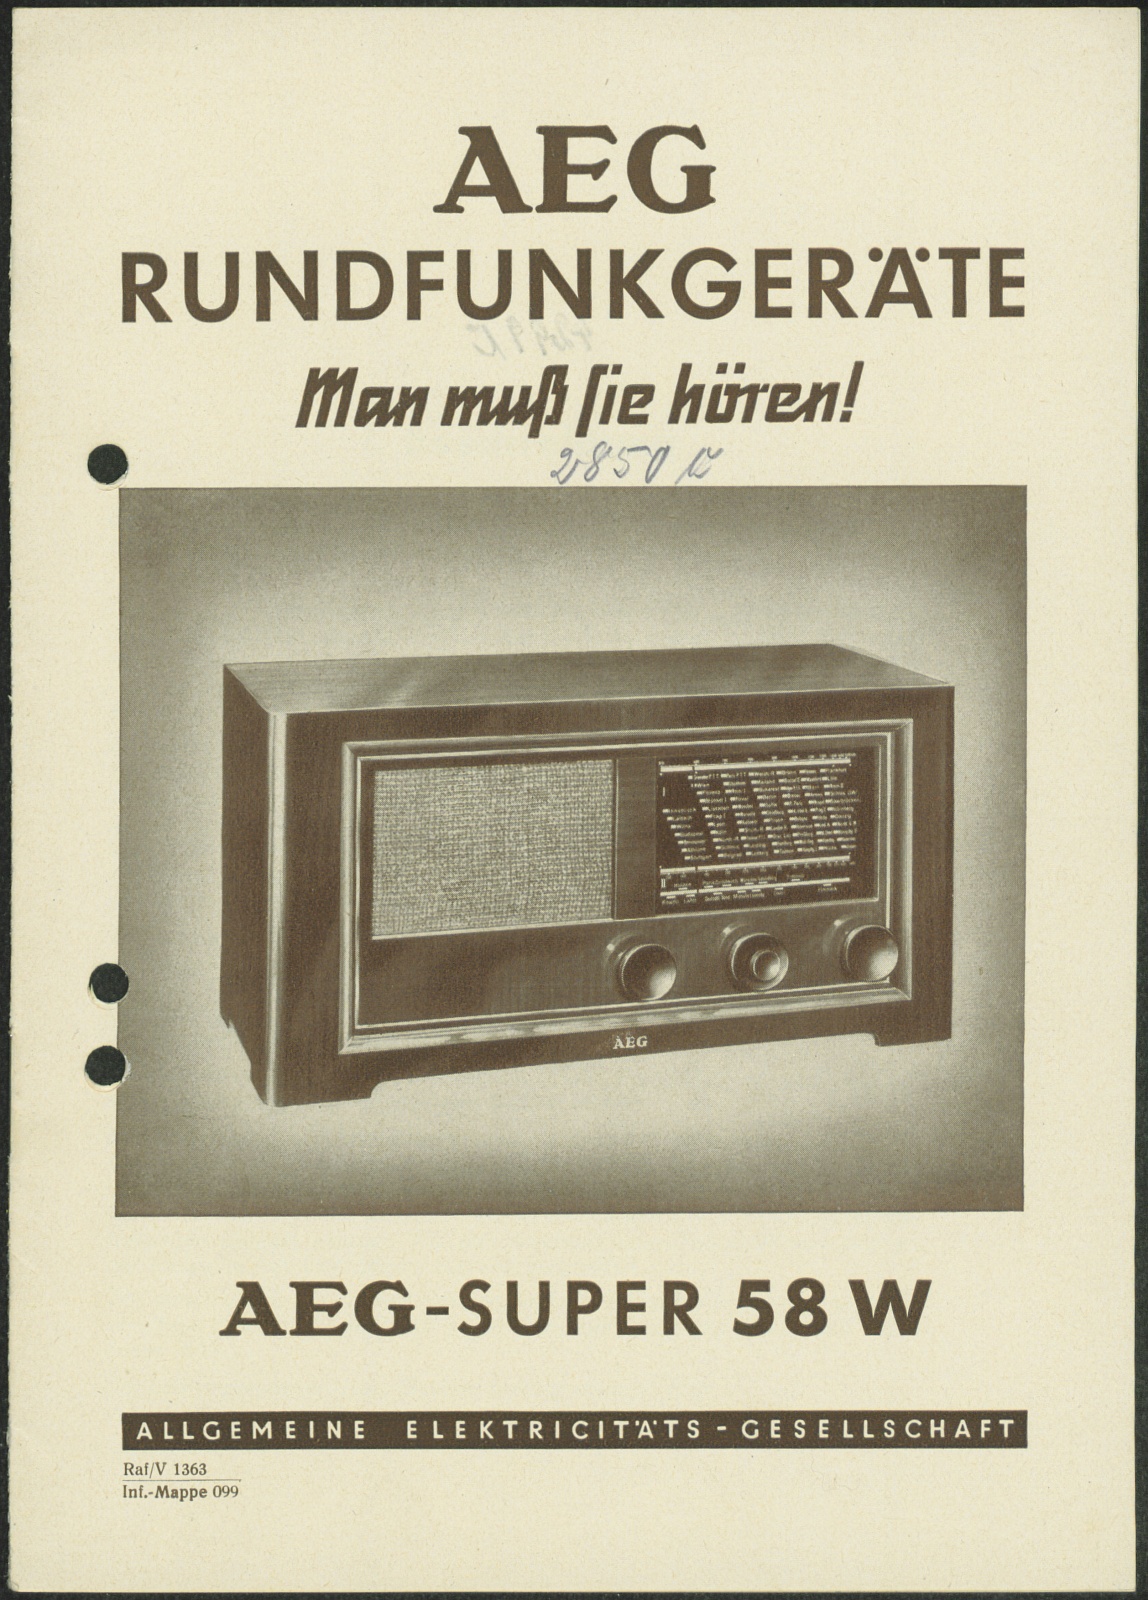 Bedienungsanleitung: AEG Rundfunkgeräte; AEG - Super 58 W (Stiftung Deutsches Technikmuseum Berlin CC0)